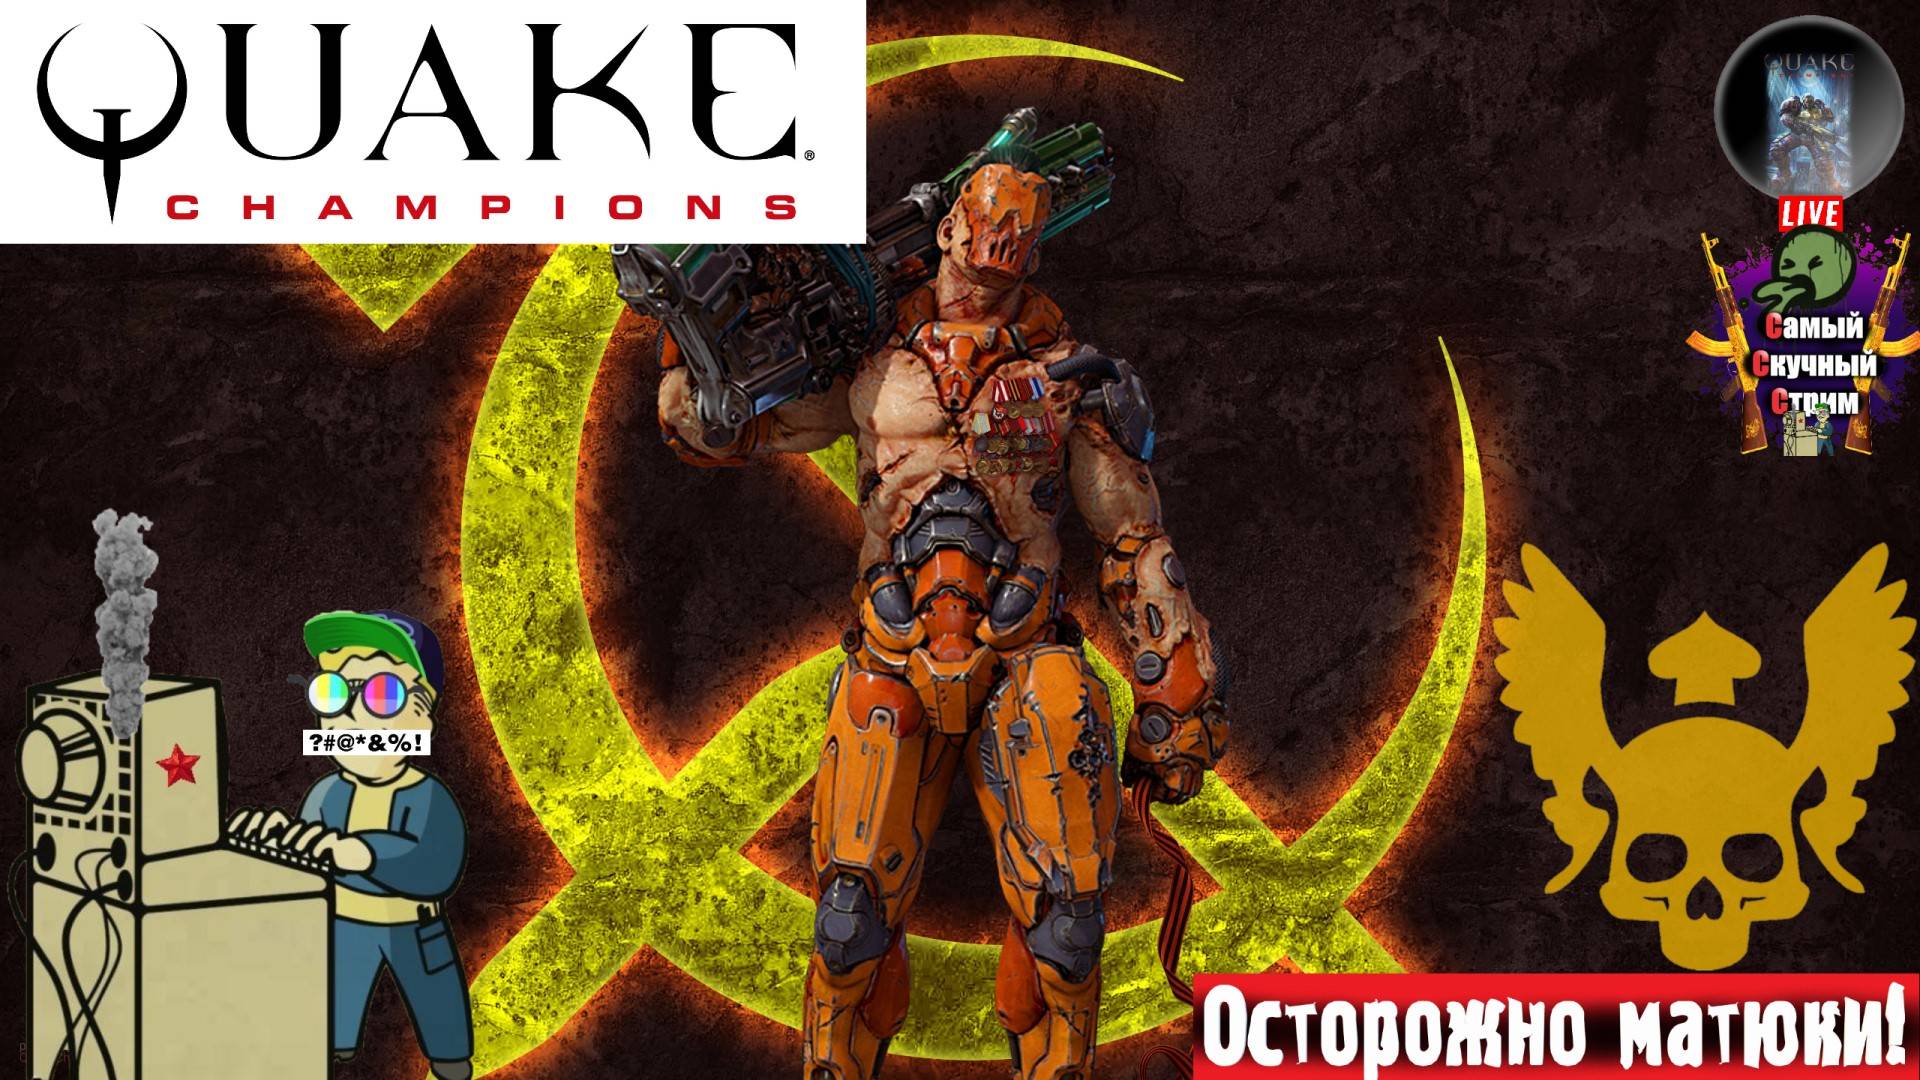 Quake Champions | Квейк Чампионс Квага | Превосходно  #quake